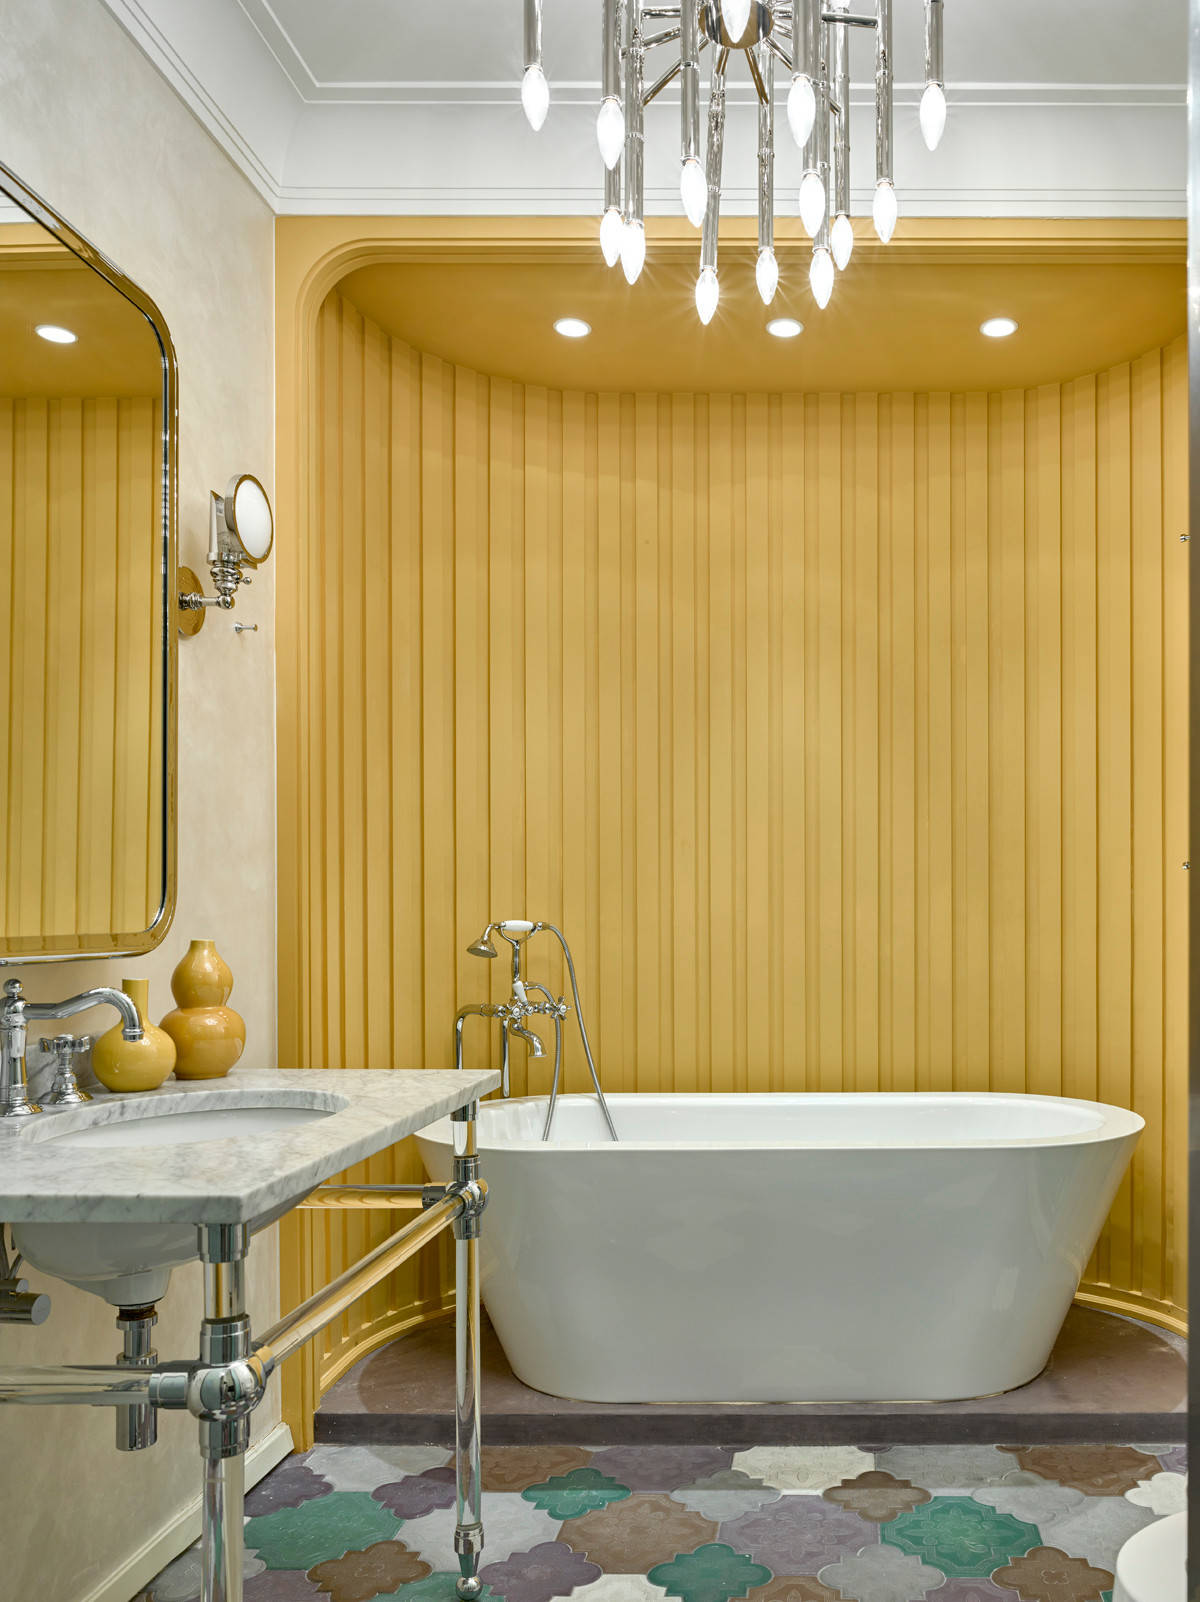 Bức tường sơn vàng cùng gạch lát sàn nhiều màu sắc cho phòng tắm rạng ngời.